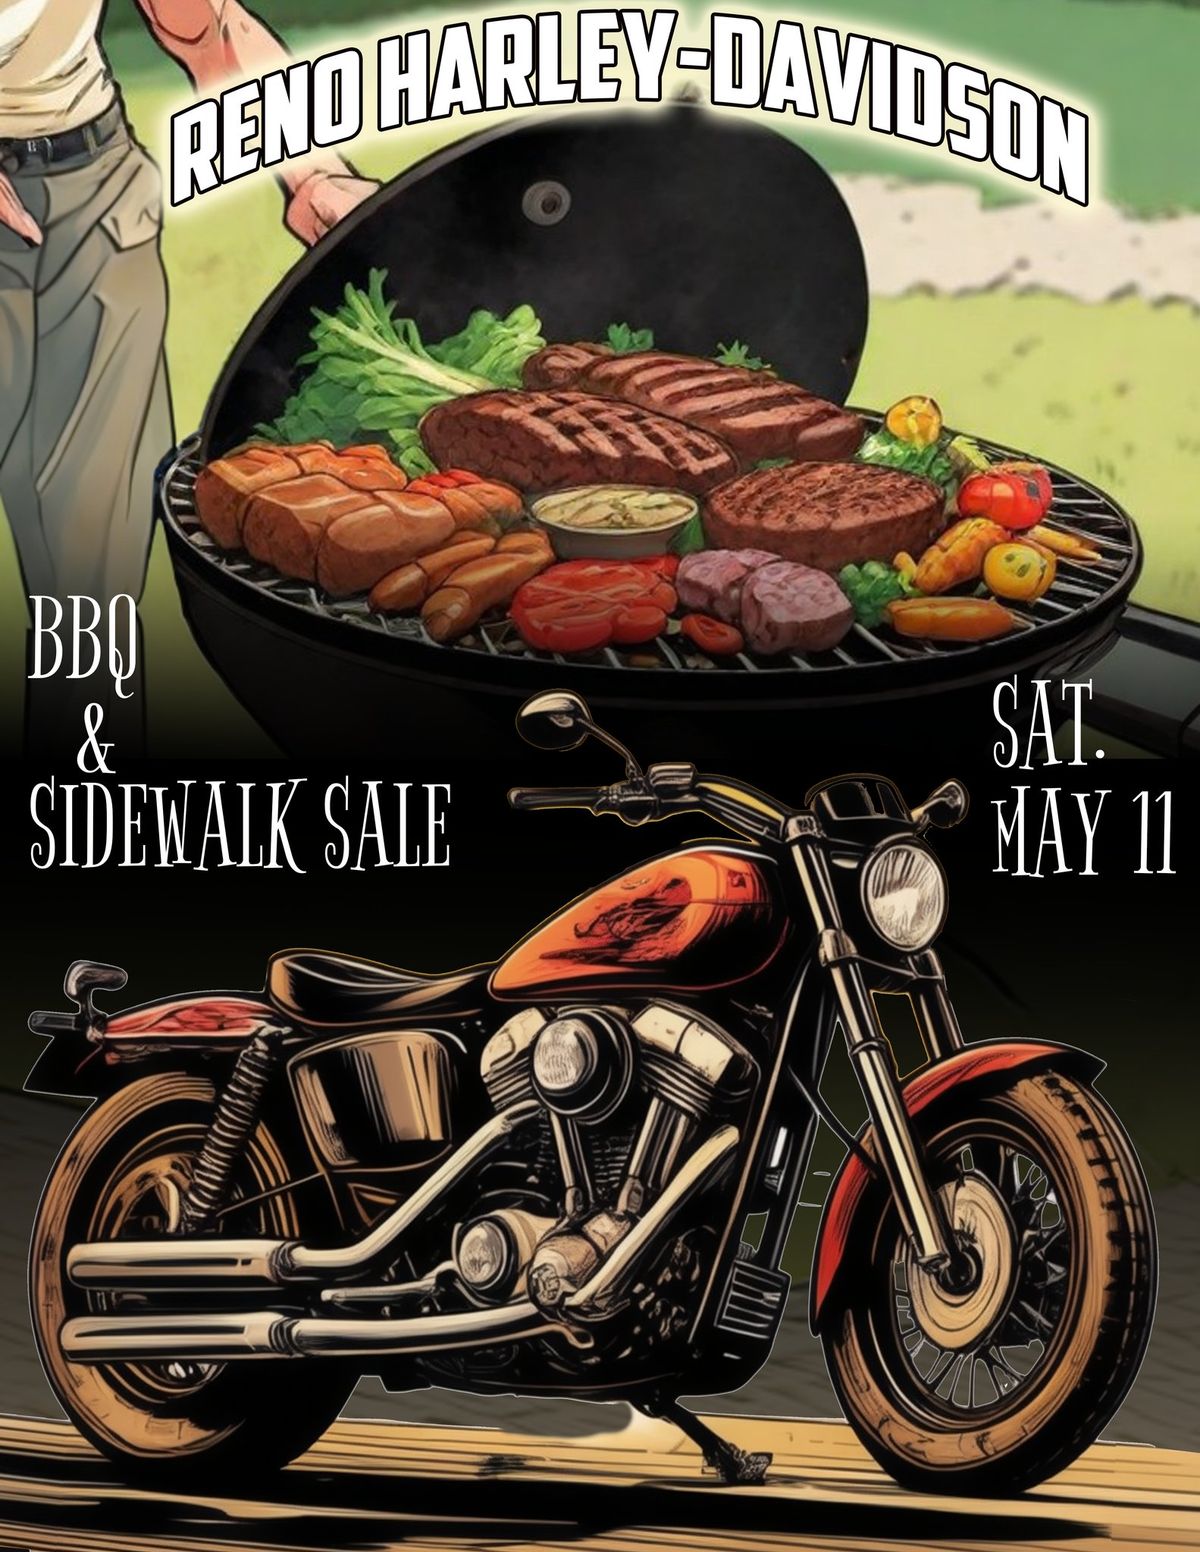 Test Ride Days, BBQ, & Sidewalk Sale